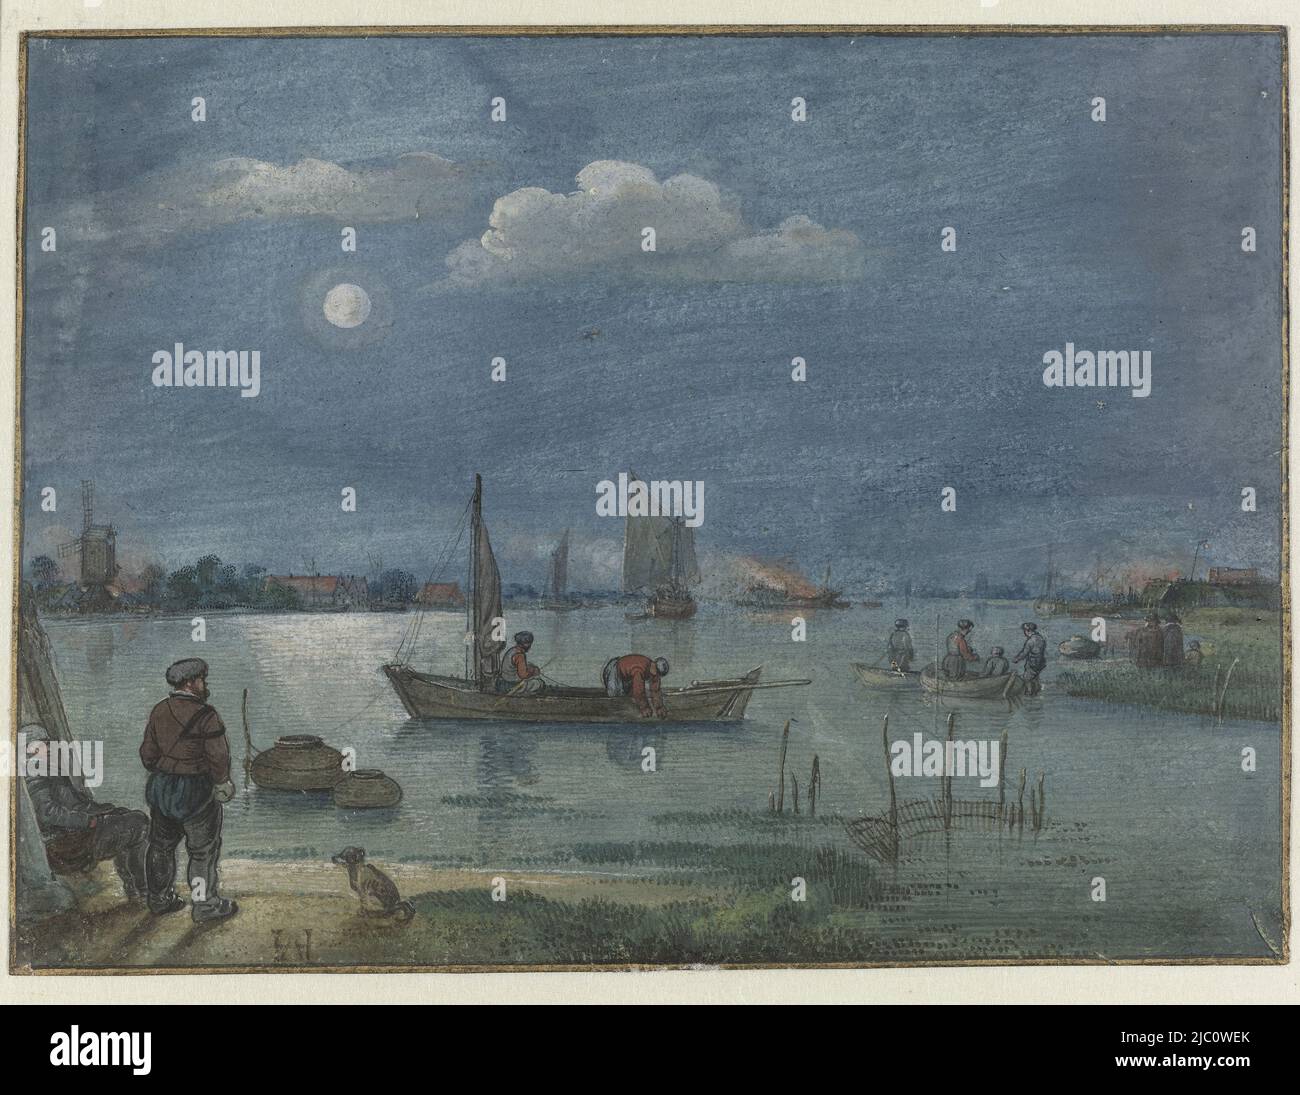 Paysage de la rivière au clair de lune avec les pêcheurs, rapporteur pour avis : Hendrick Avercamp, (mentionné à l'objet), c. 1625, papier, brosse, stylo, h 144 mm × l 195 mm Banque D'Images